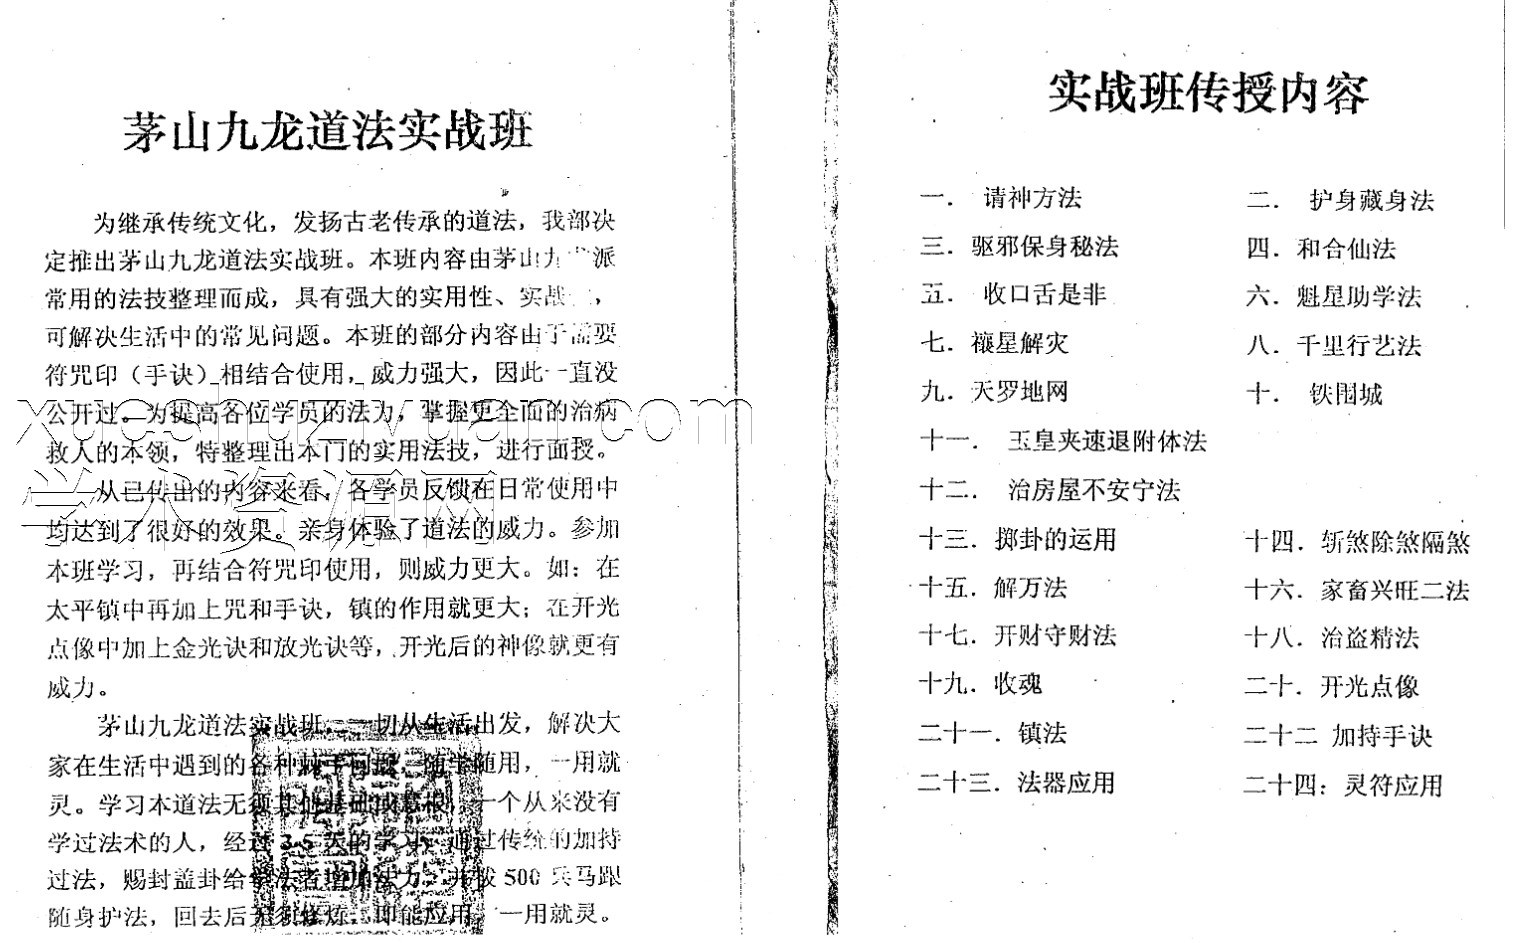 茅山九龙神秘功实战班宇真34页.pdf插图1